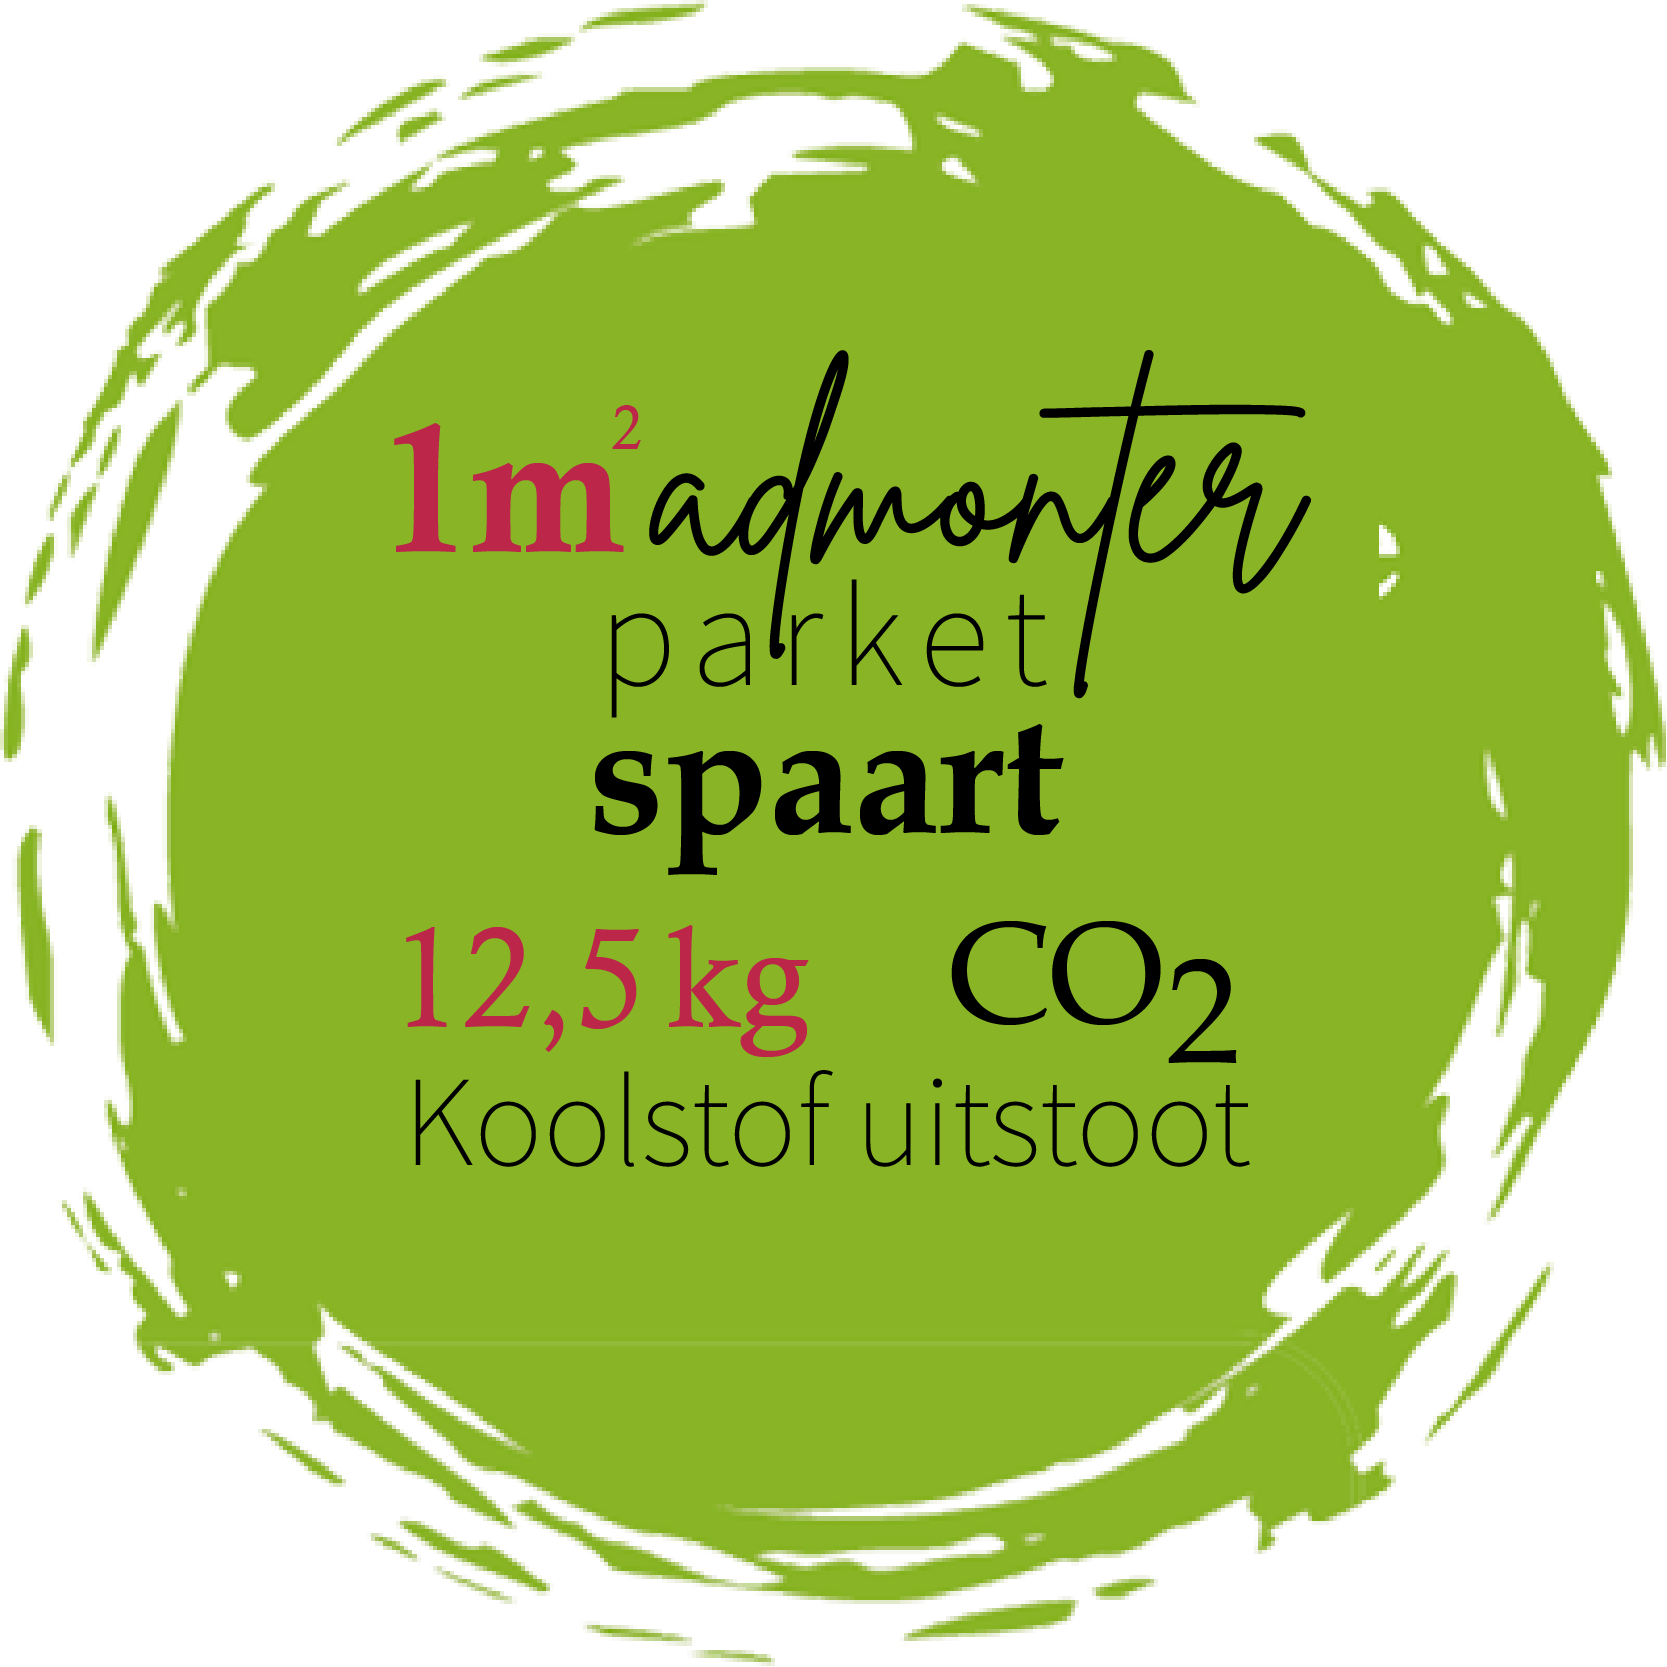 Logo Admonter -1m² parket Spaart CO2- uitstoot - Ecologische keuze